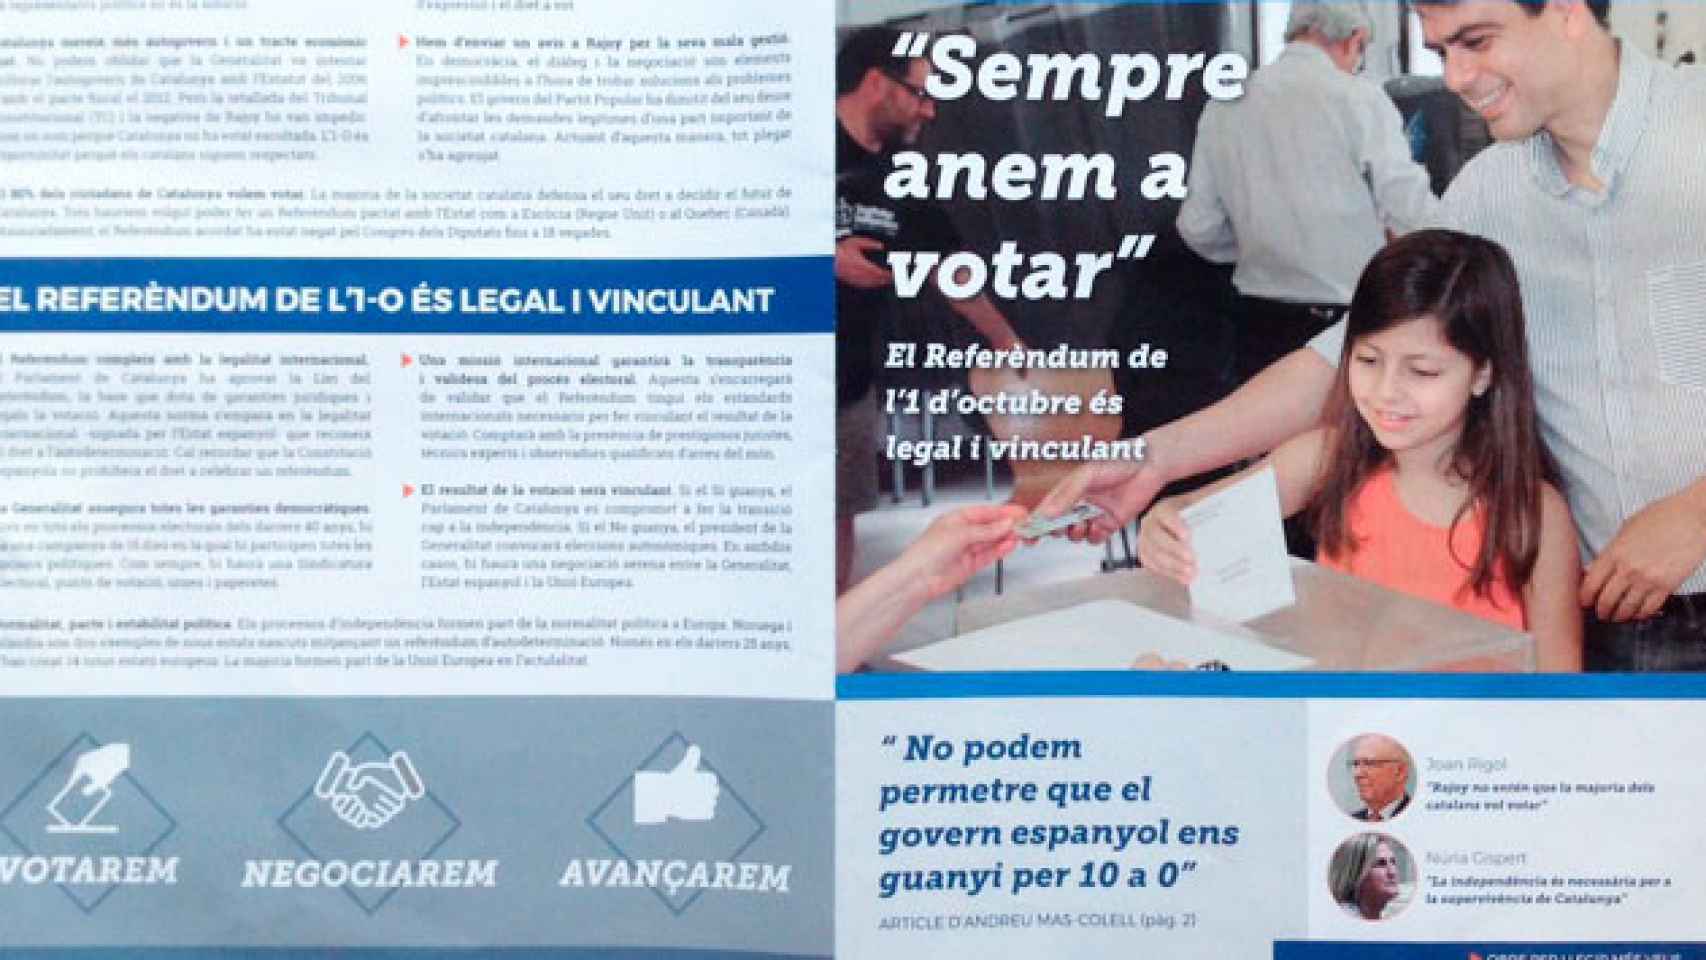 La propaganda que está buzoneando Òmnium en Cataluña / CG